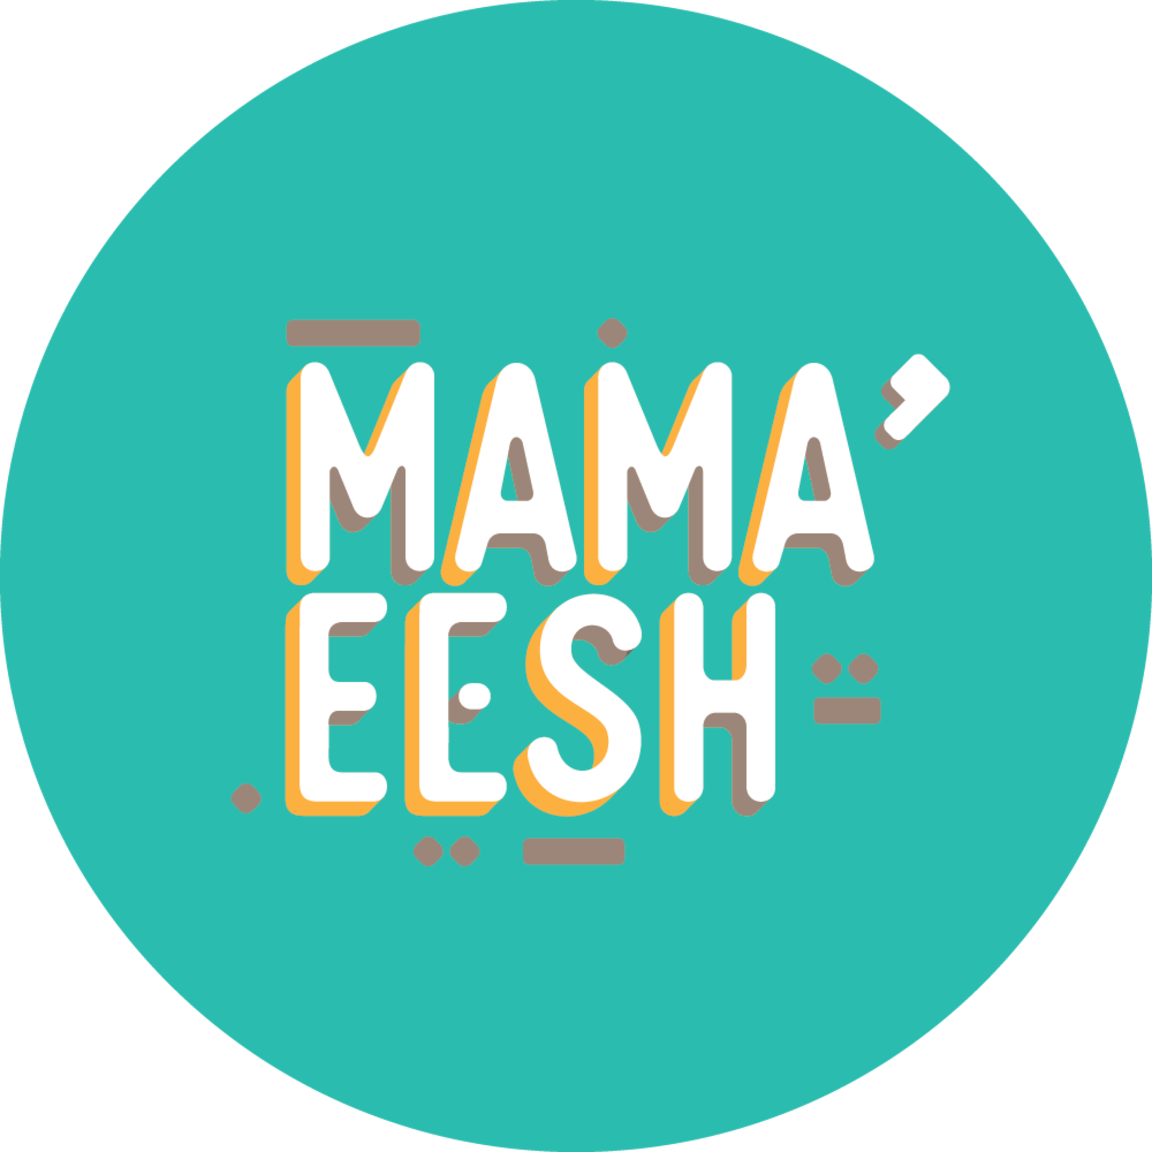 MAMA’ EESH